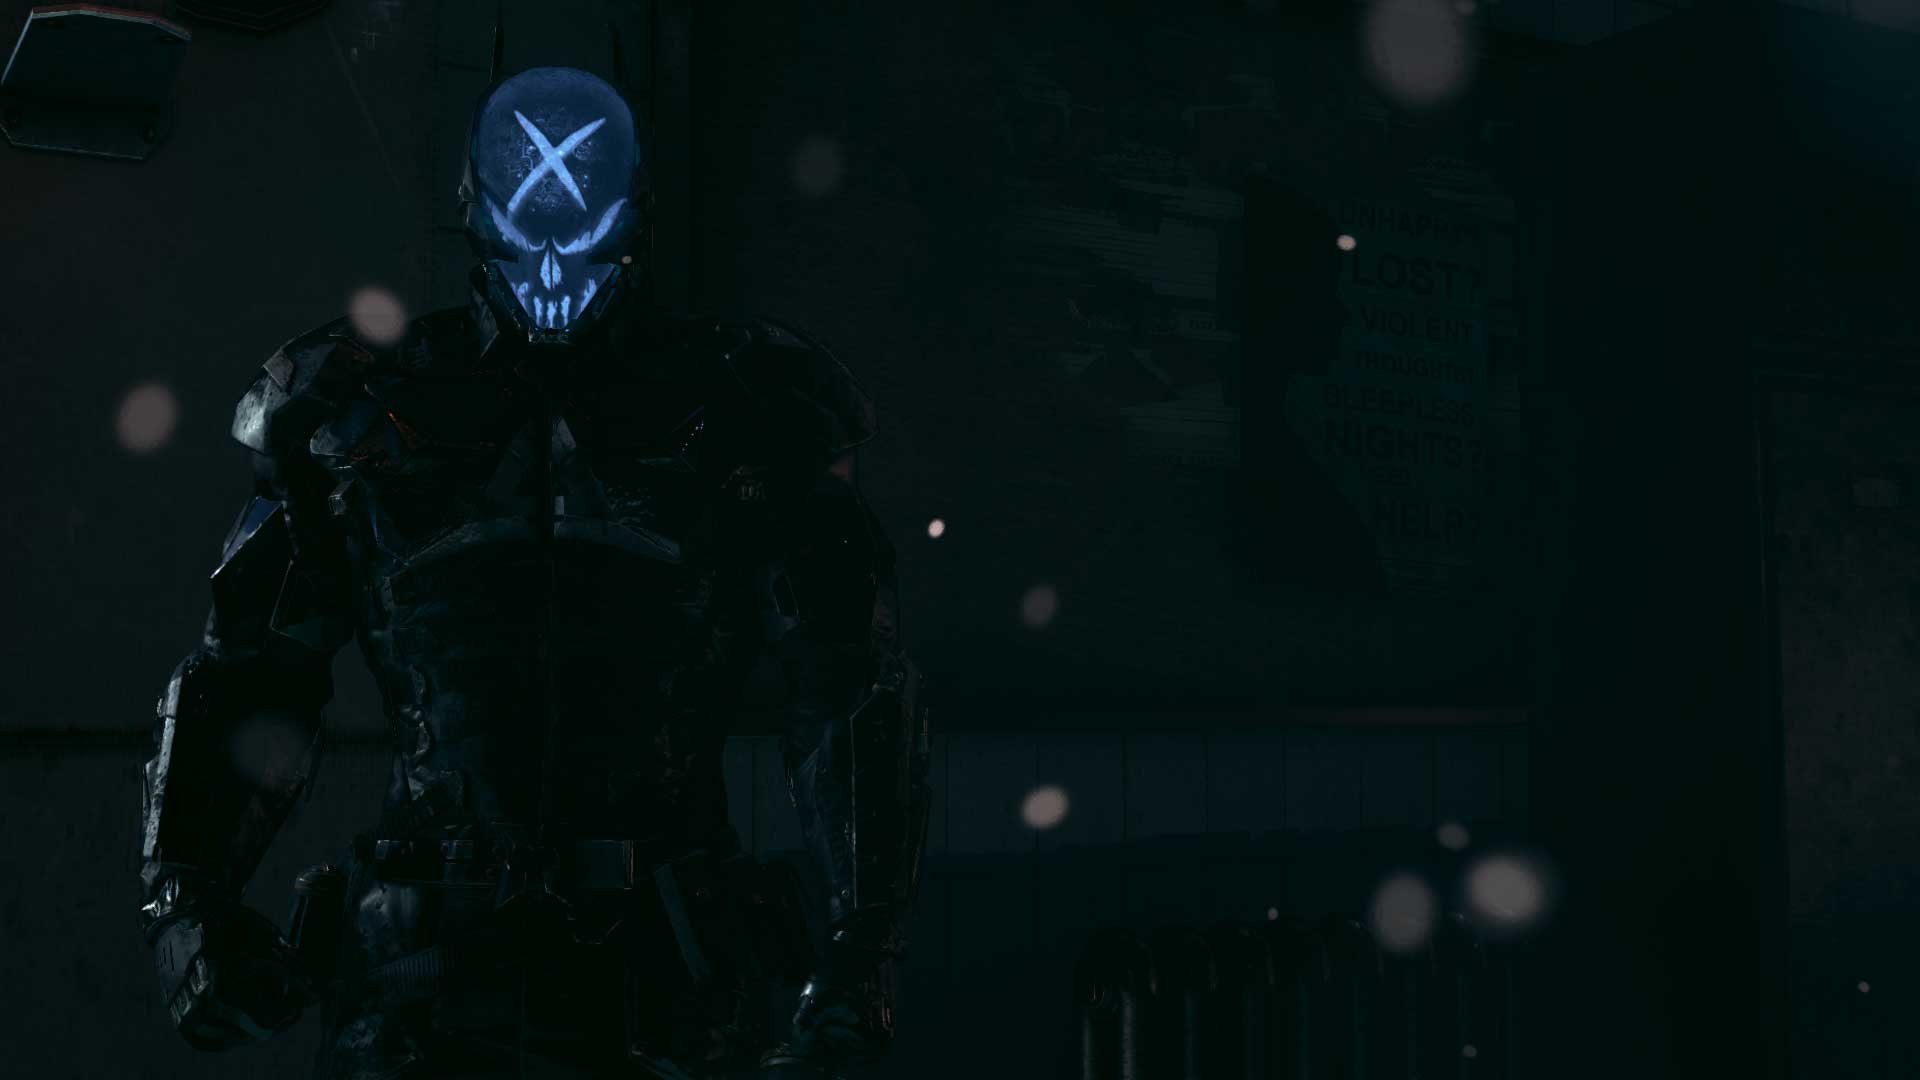 Arkham City suit skin mod [Batman: Arkham Origins] [Mods]